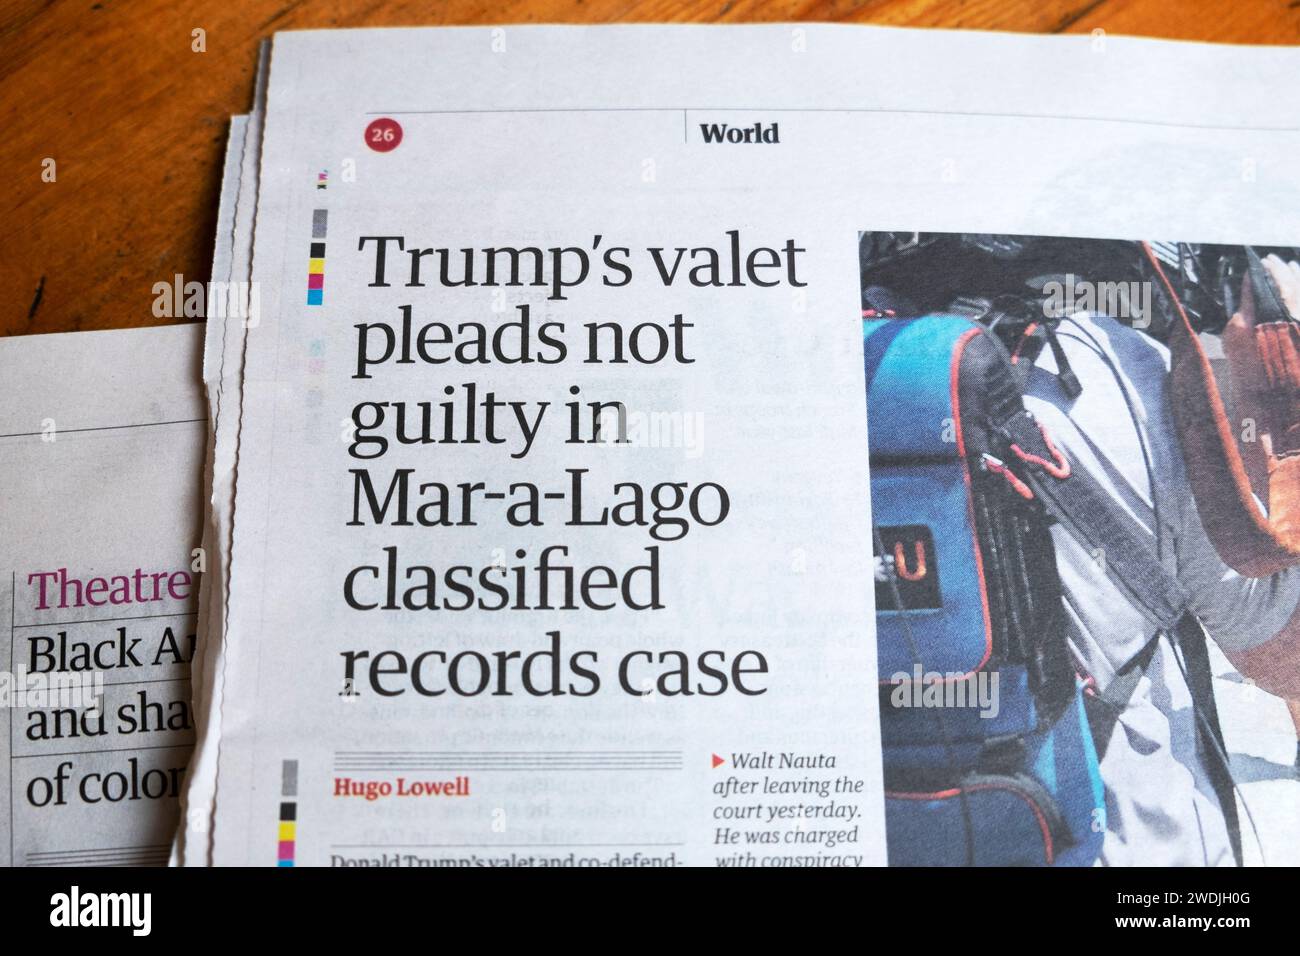 Donald 'Trump's Vallet si dichiara non colpevole in Mar-a-lago Classified Records Case', titolo del giornale del Dipartimento di giustizia degli Stati Uniti articolo 7 luglio 2023 Foto Stock